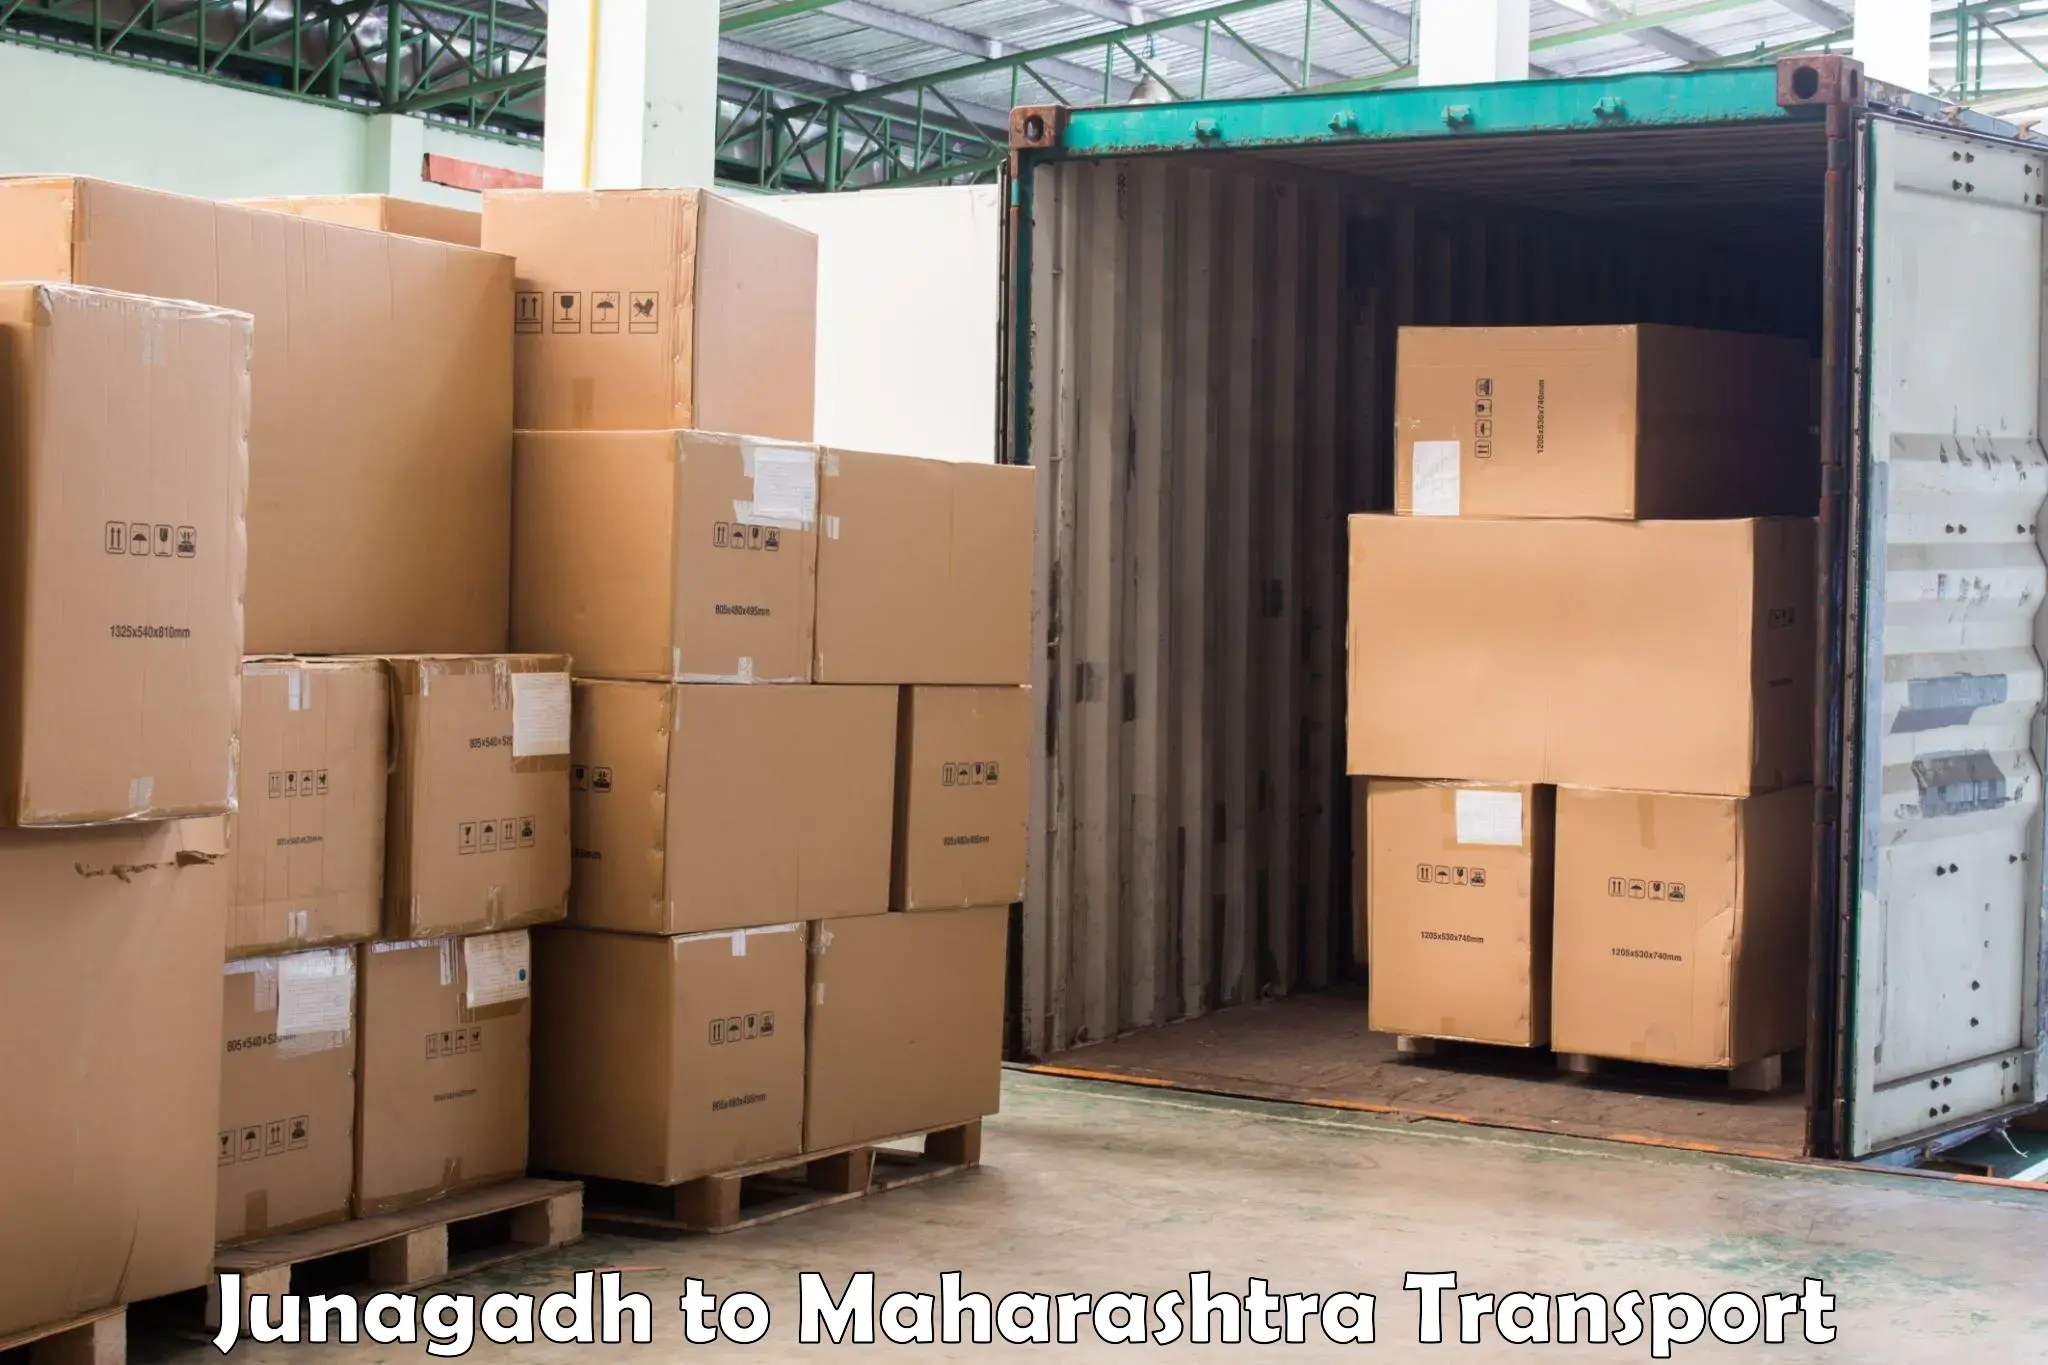 Furniture transport service Junagadh to Kandhar